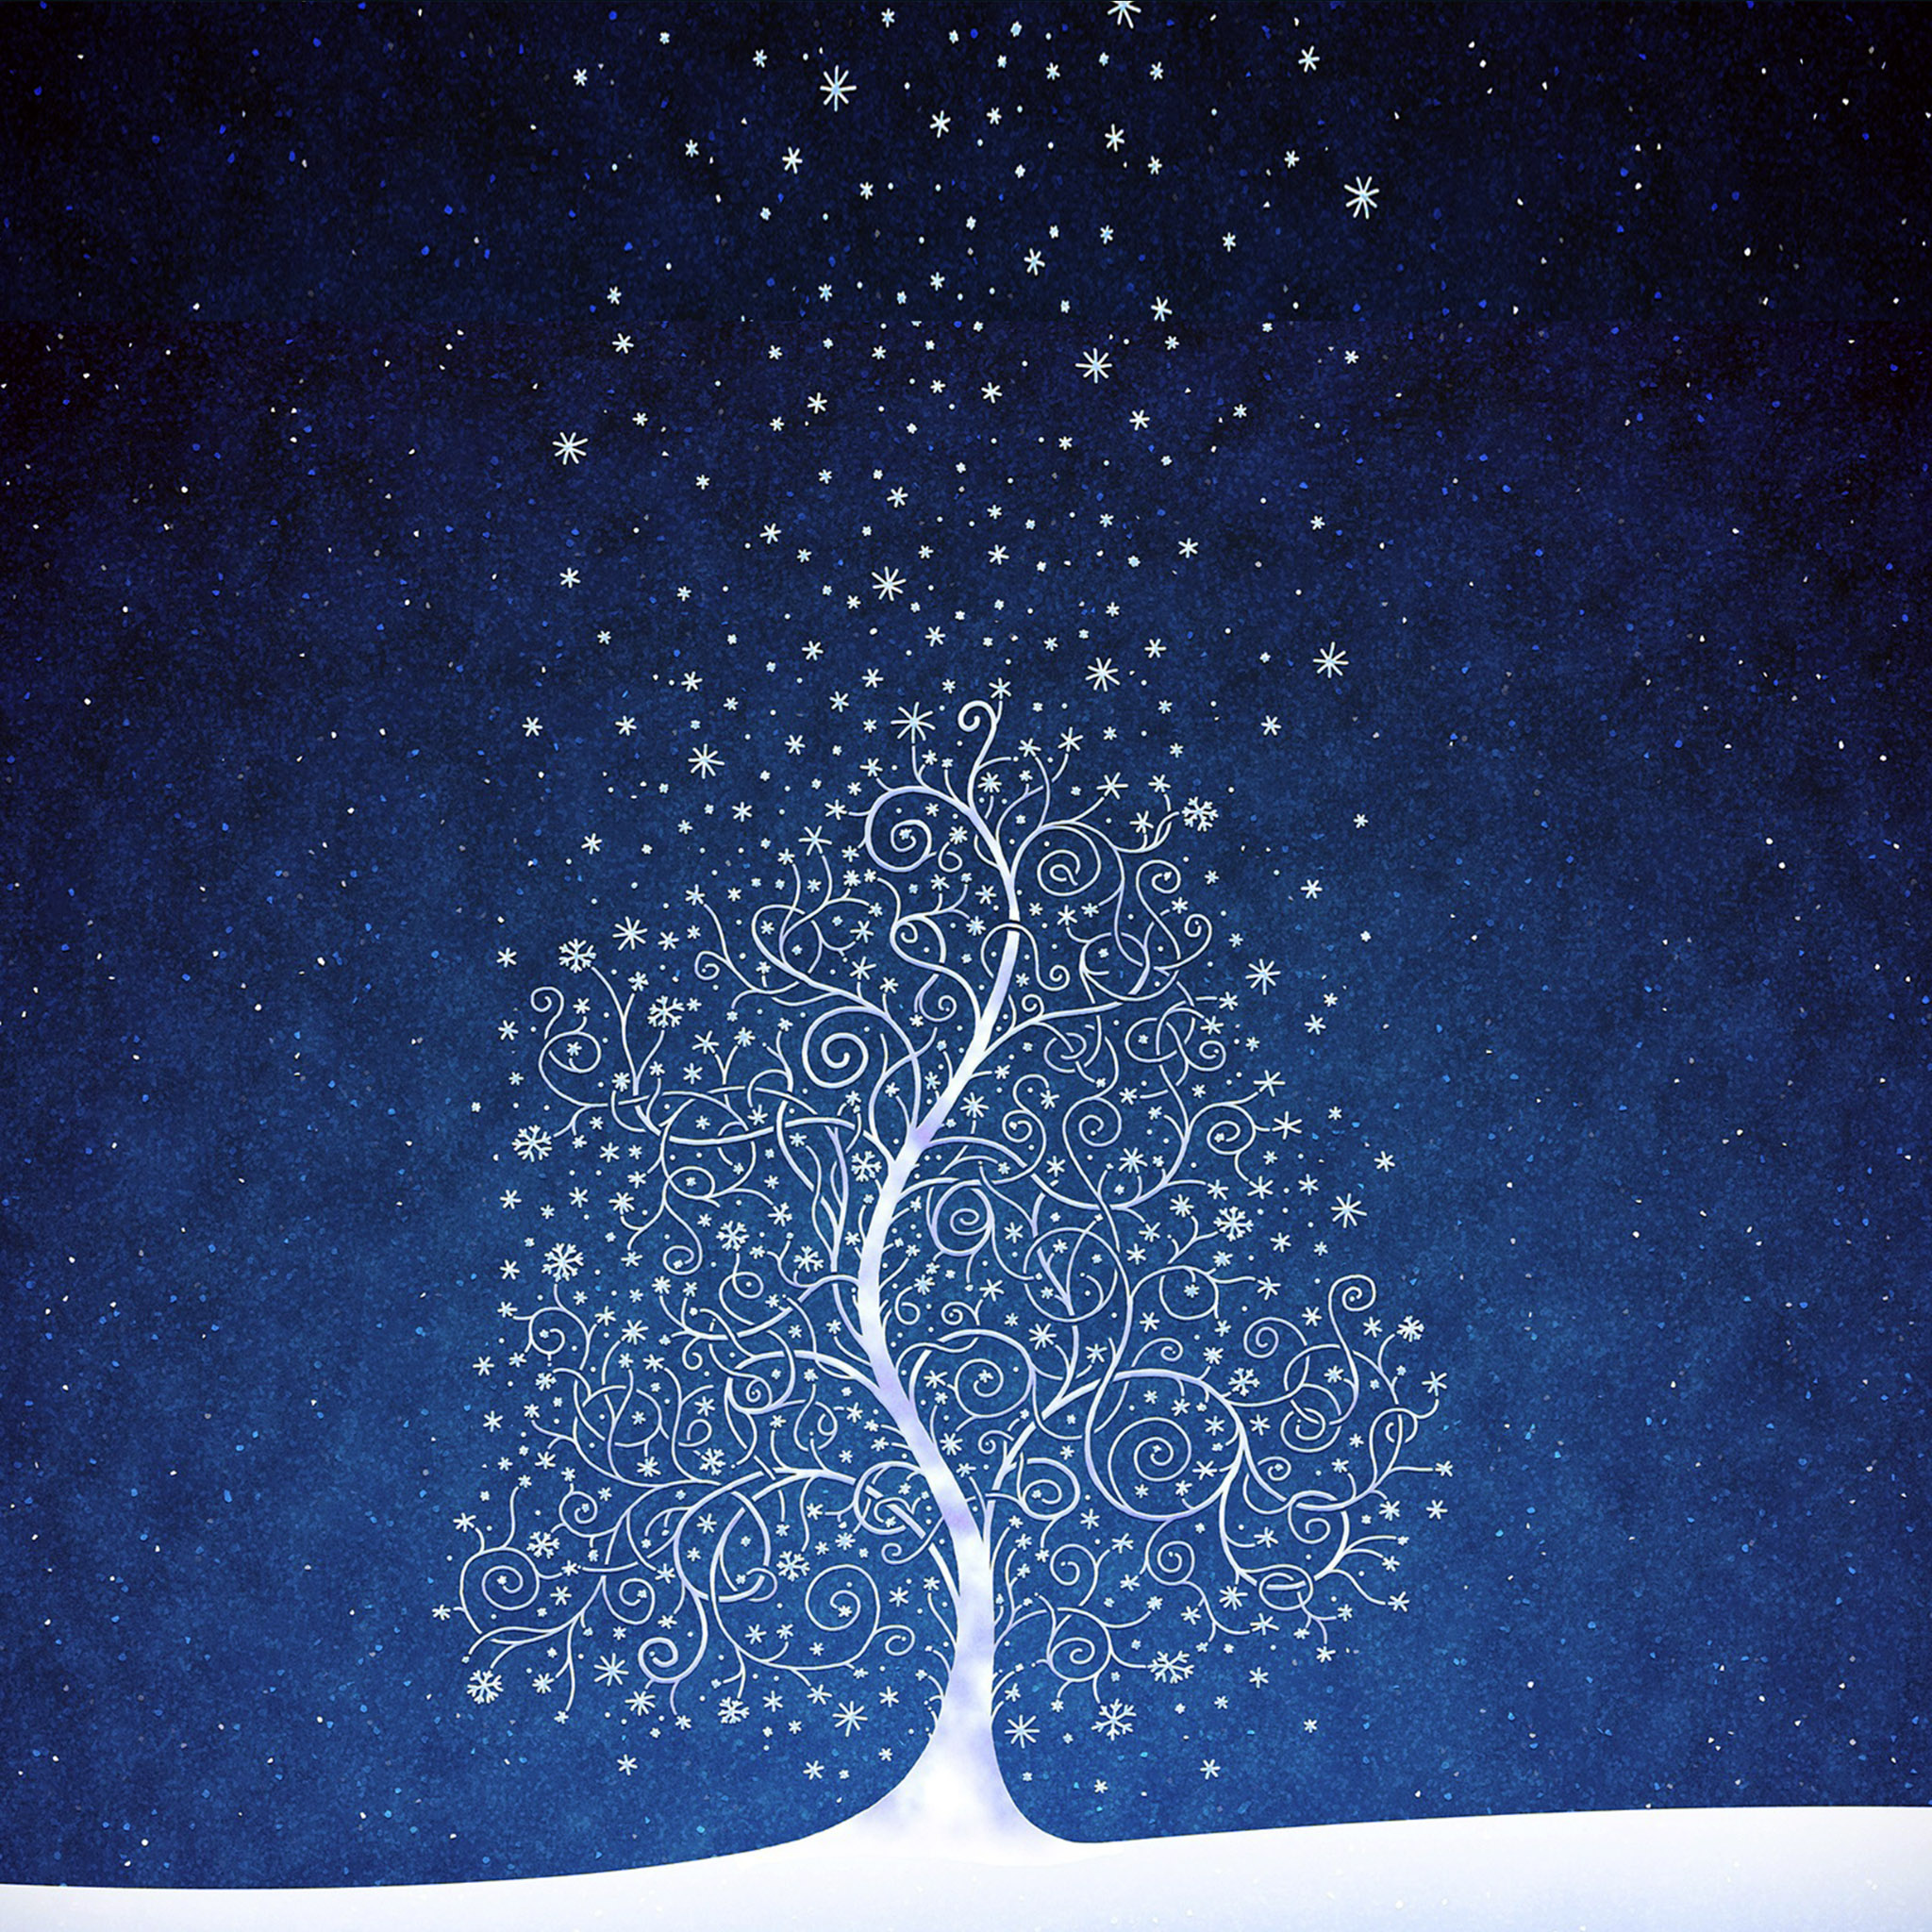 人気46位 綺麗な雪夜のイラスト Ipad タブレット壁紙ギャラリー